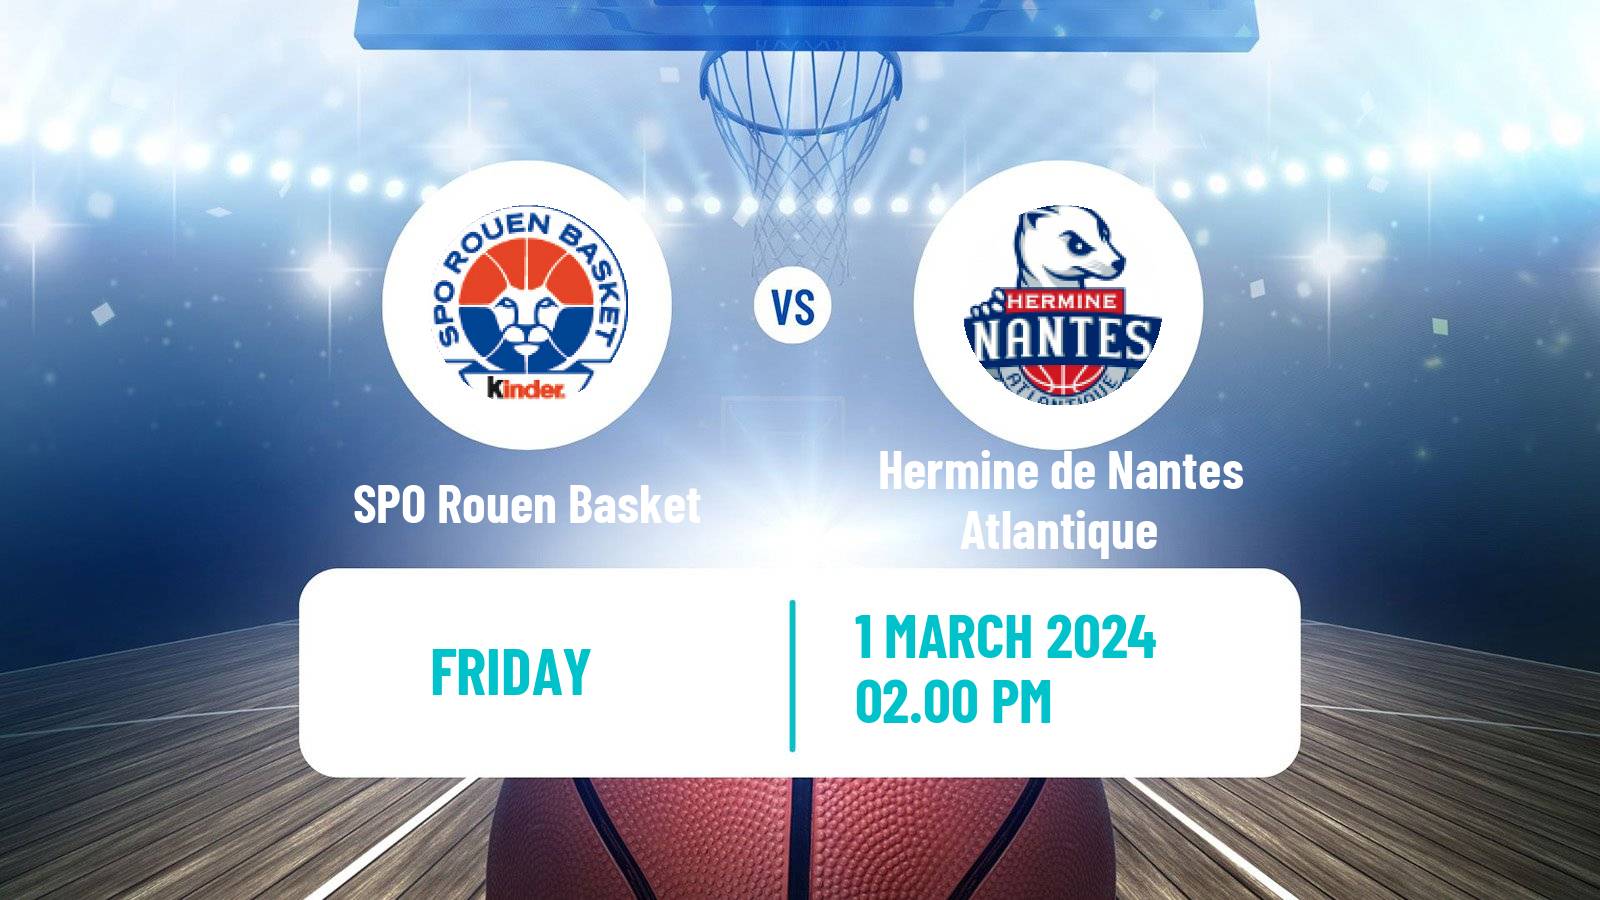 Basketball French LNB Pro B SPO Rouen Basket - Hermine de Nantes Atlantique